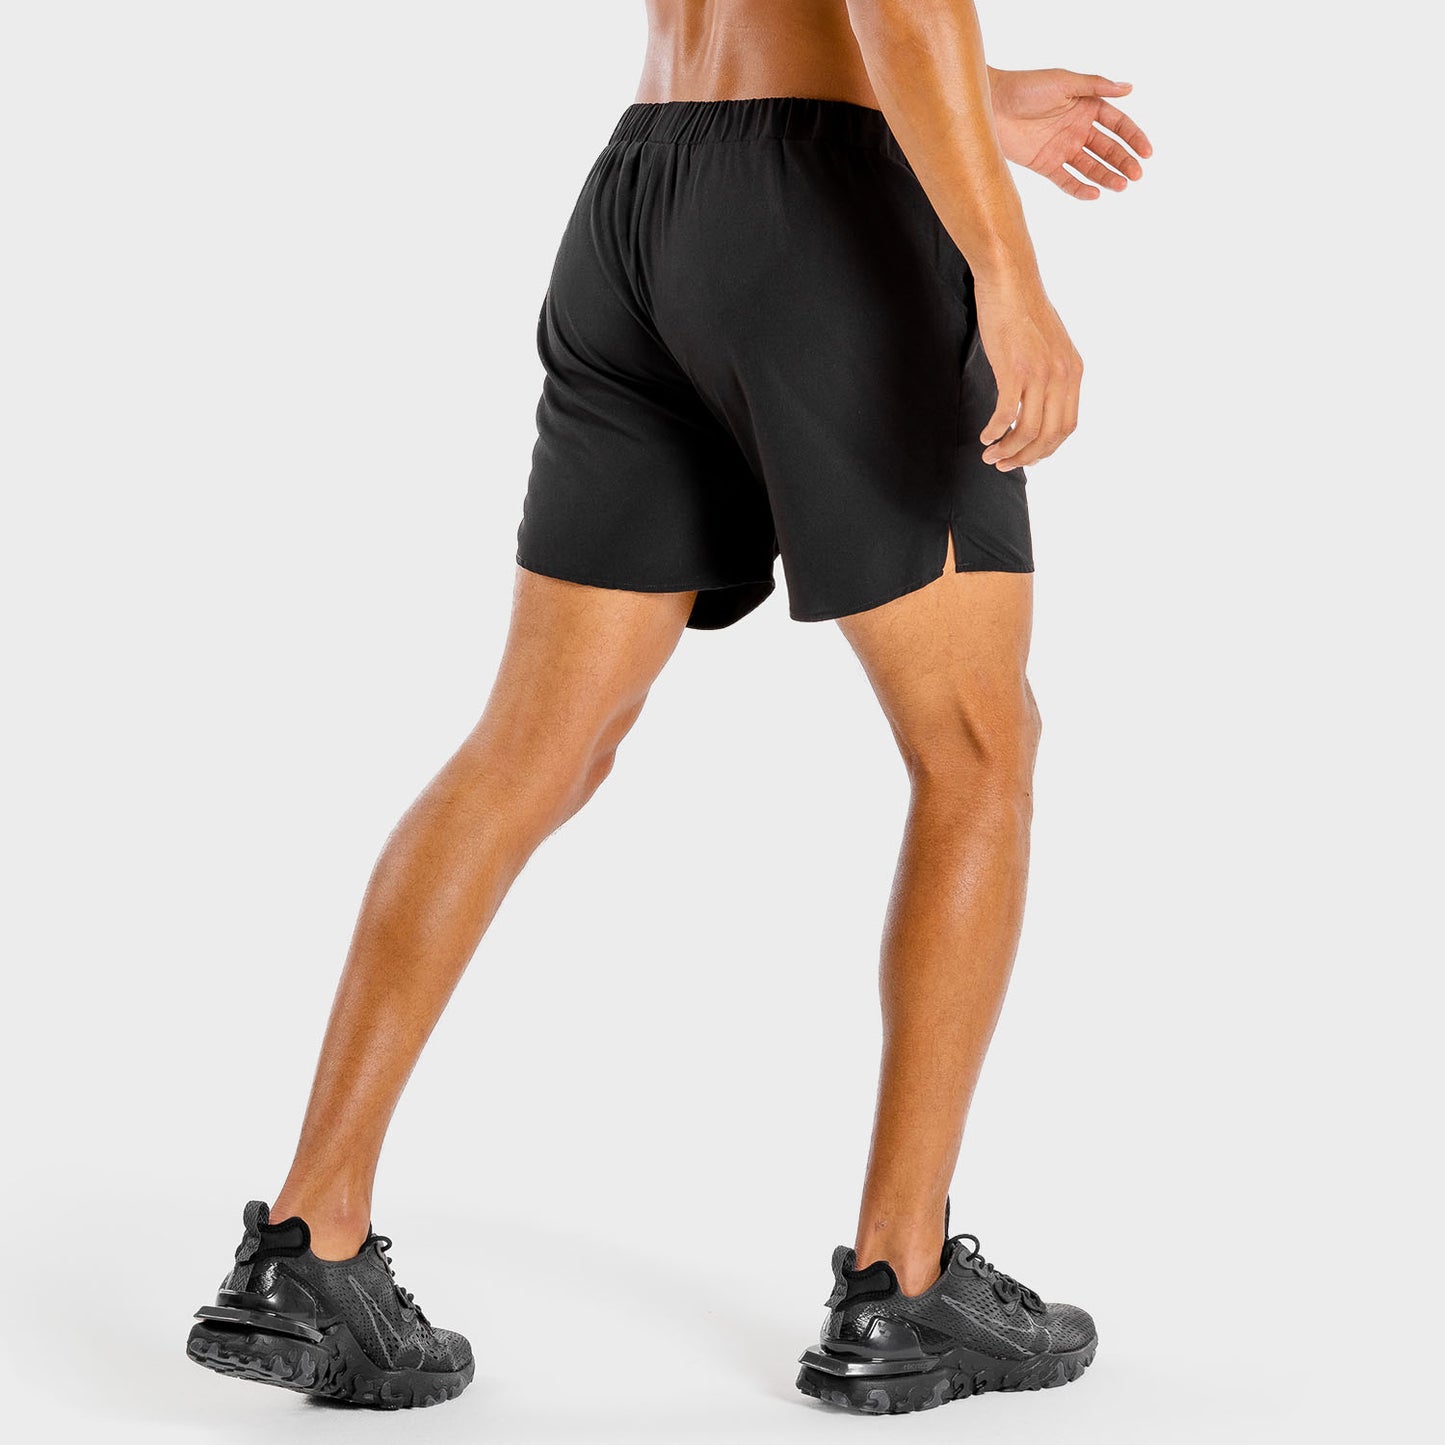 squatwolf-workout-short-for-men-primal-shorts-black-gym-wear